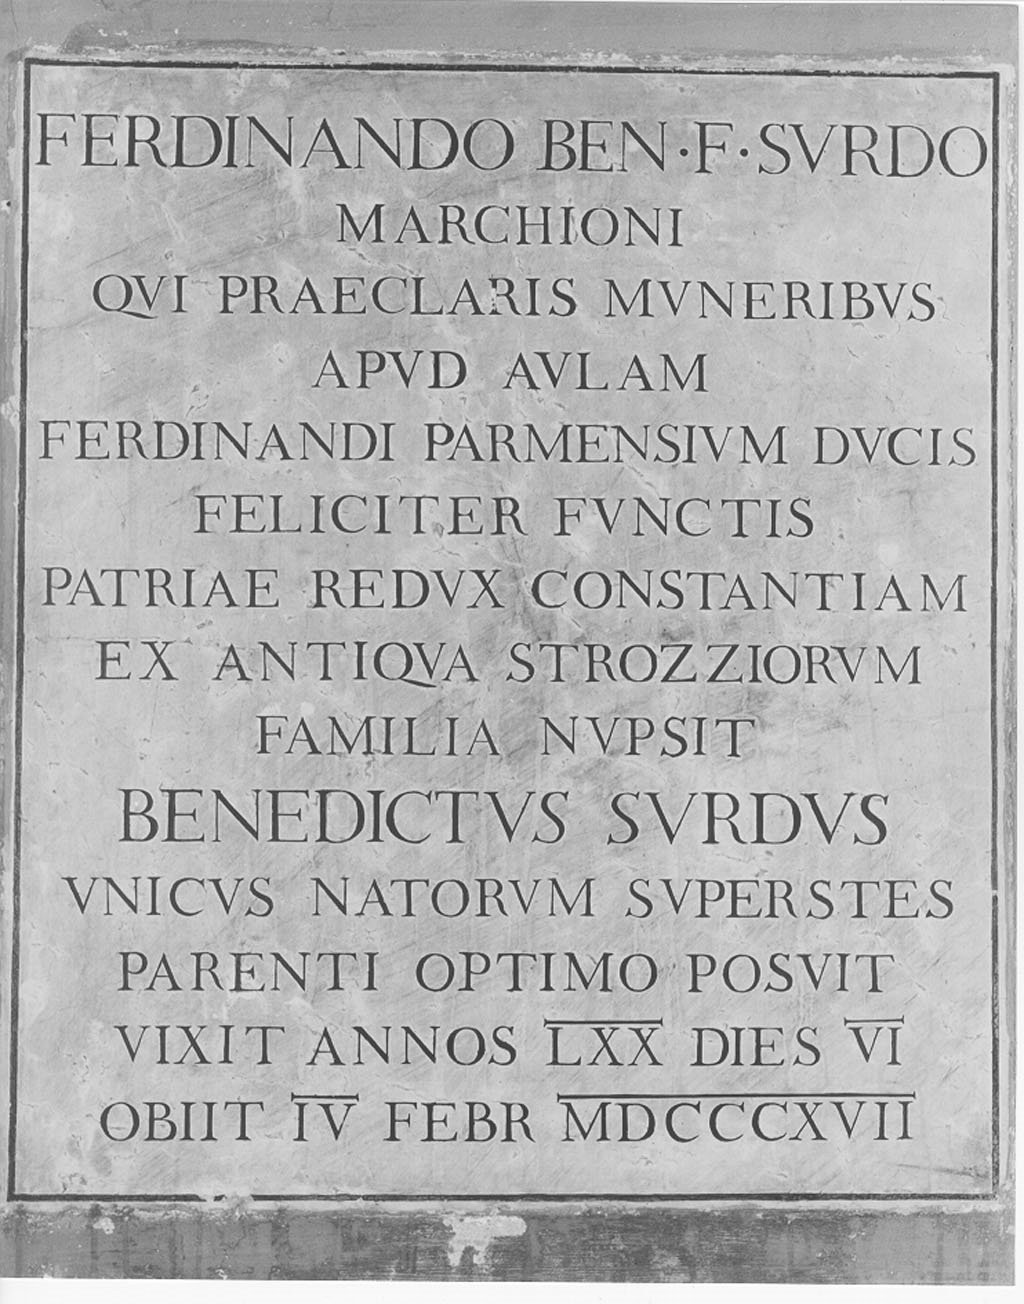 lapide commemorativa, opera isolata - manifattura mantovana (sec. XIX, sec. XIX)